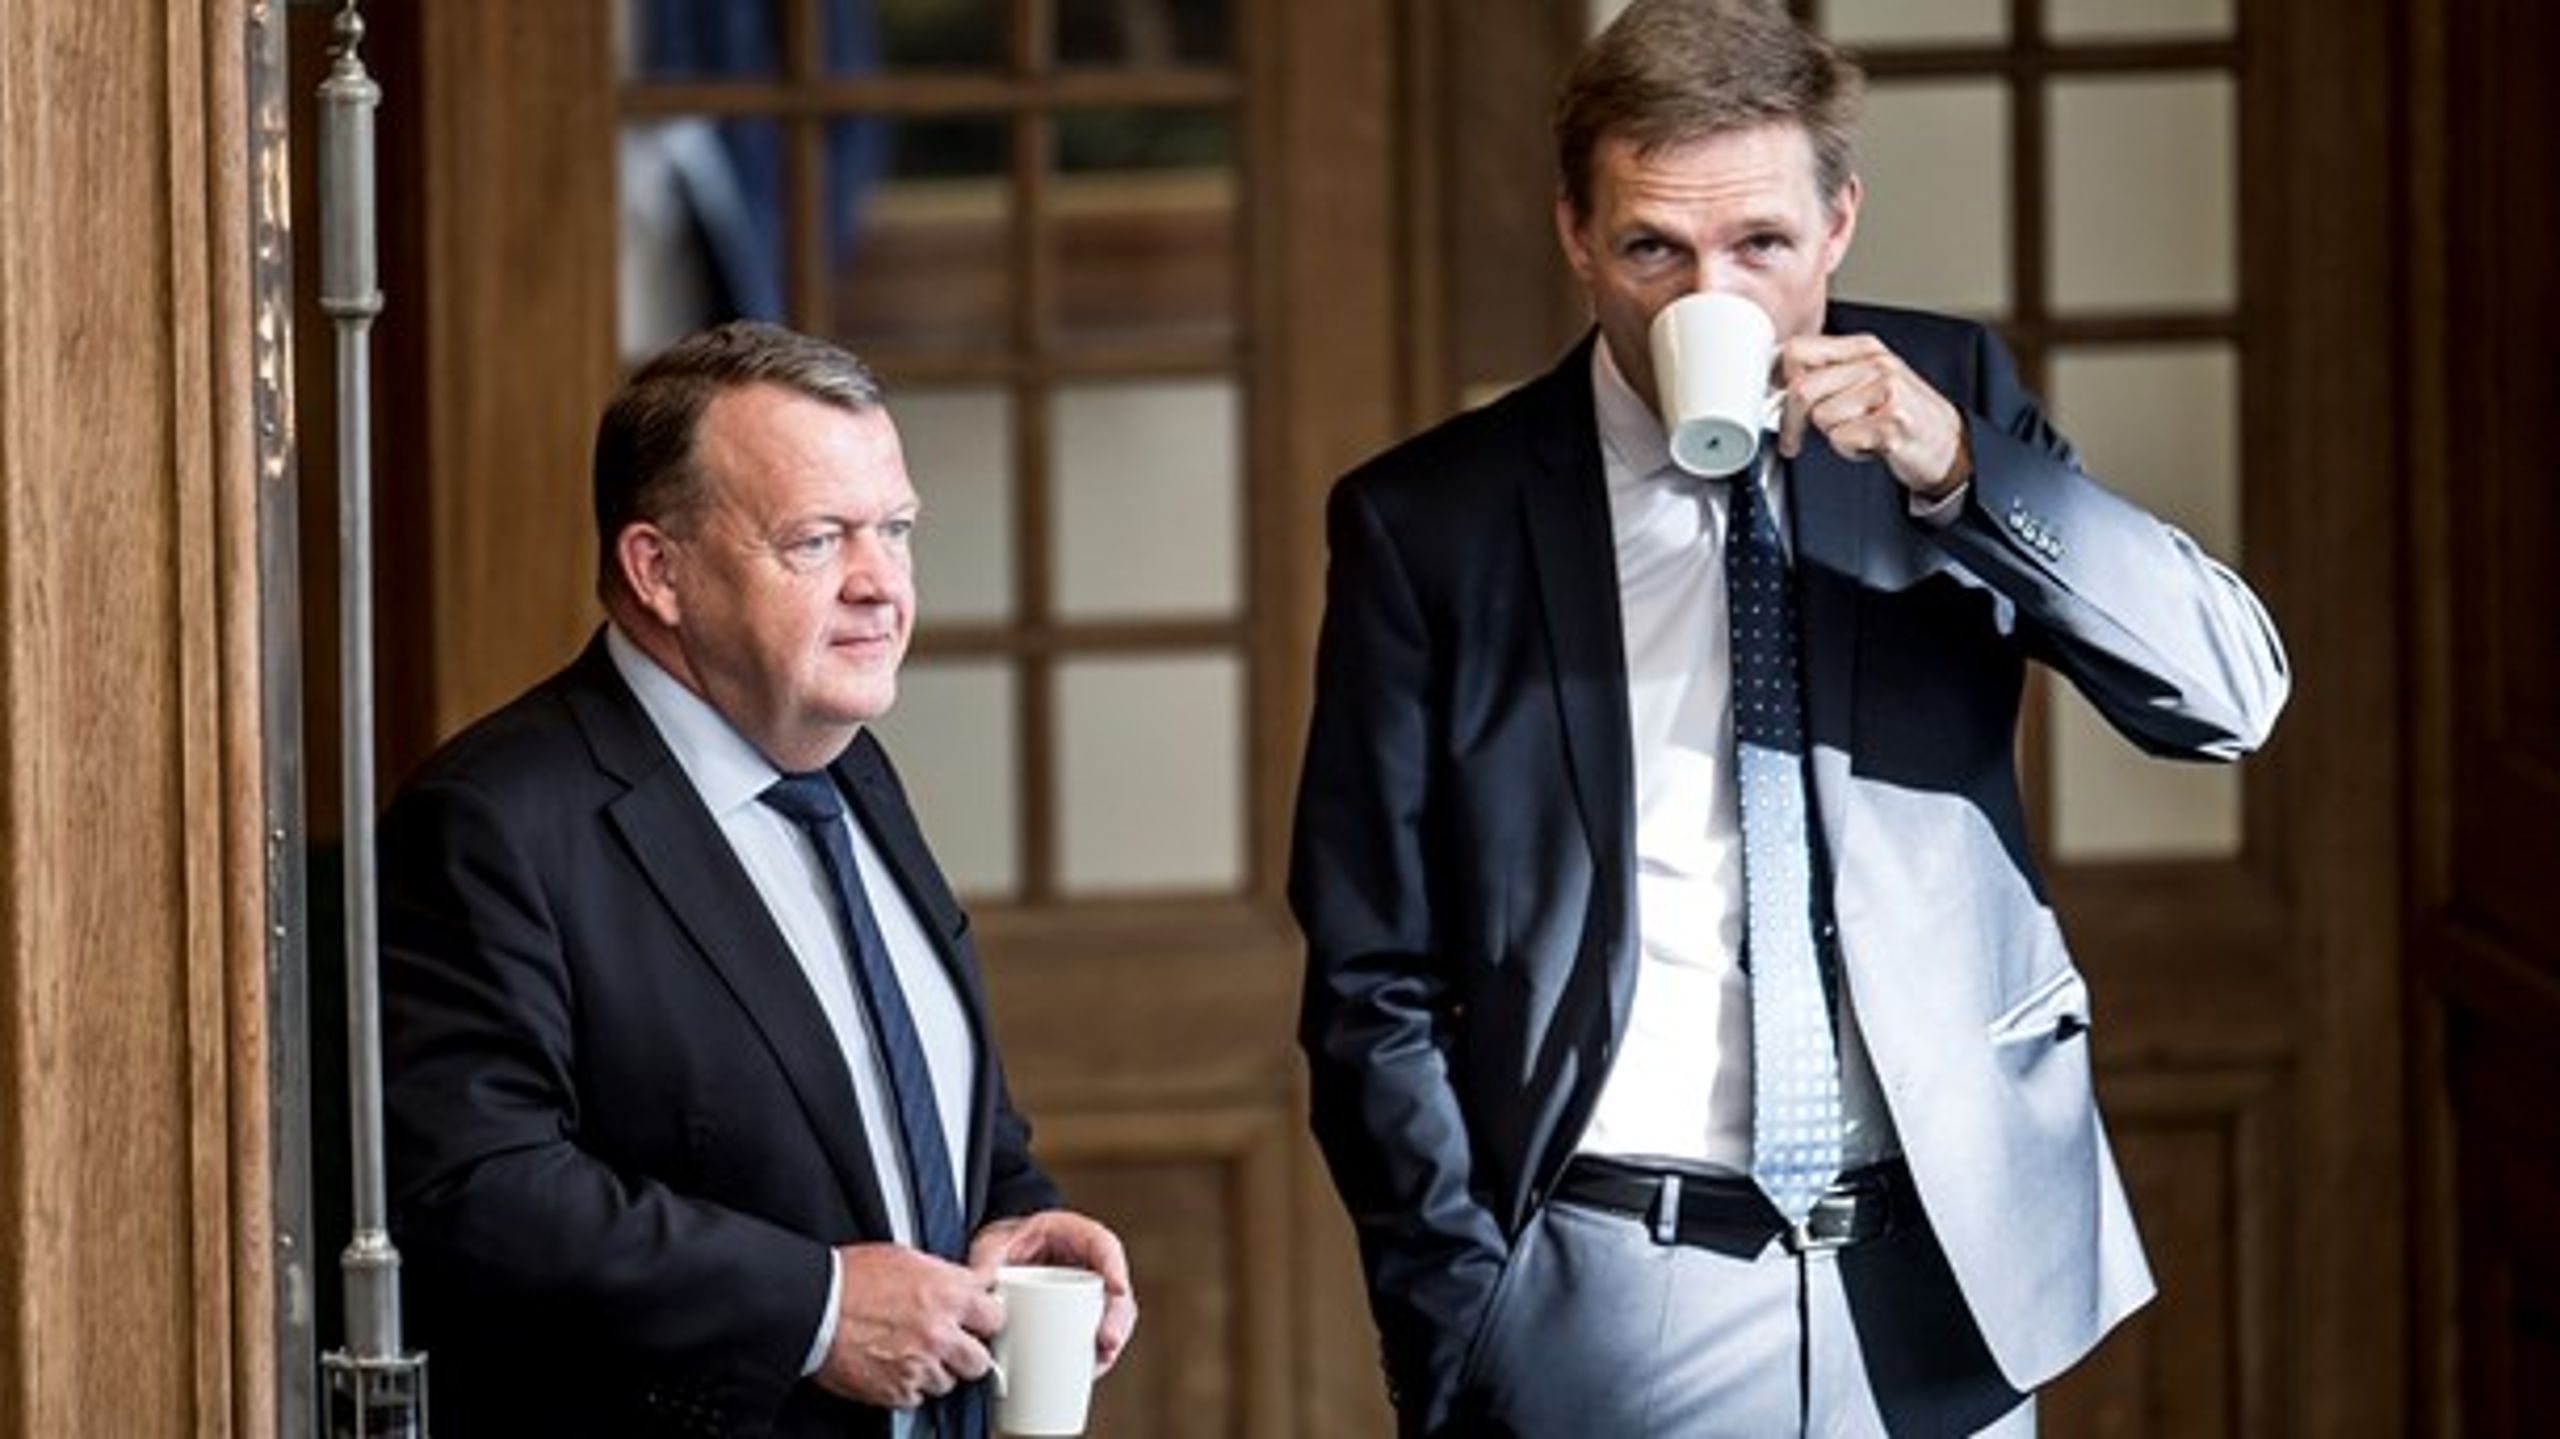 Kristian Thulesen Dahl og Dansk Folkeparti har kortene på hånden ved dette års finanslovsforhandlinger, mener Erik Holstein, Altingets politiske kommentator.